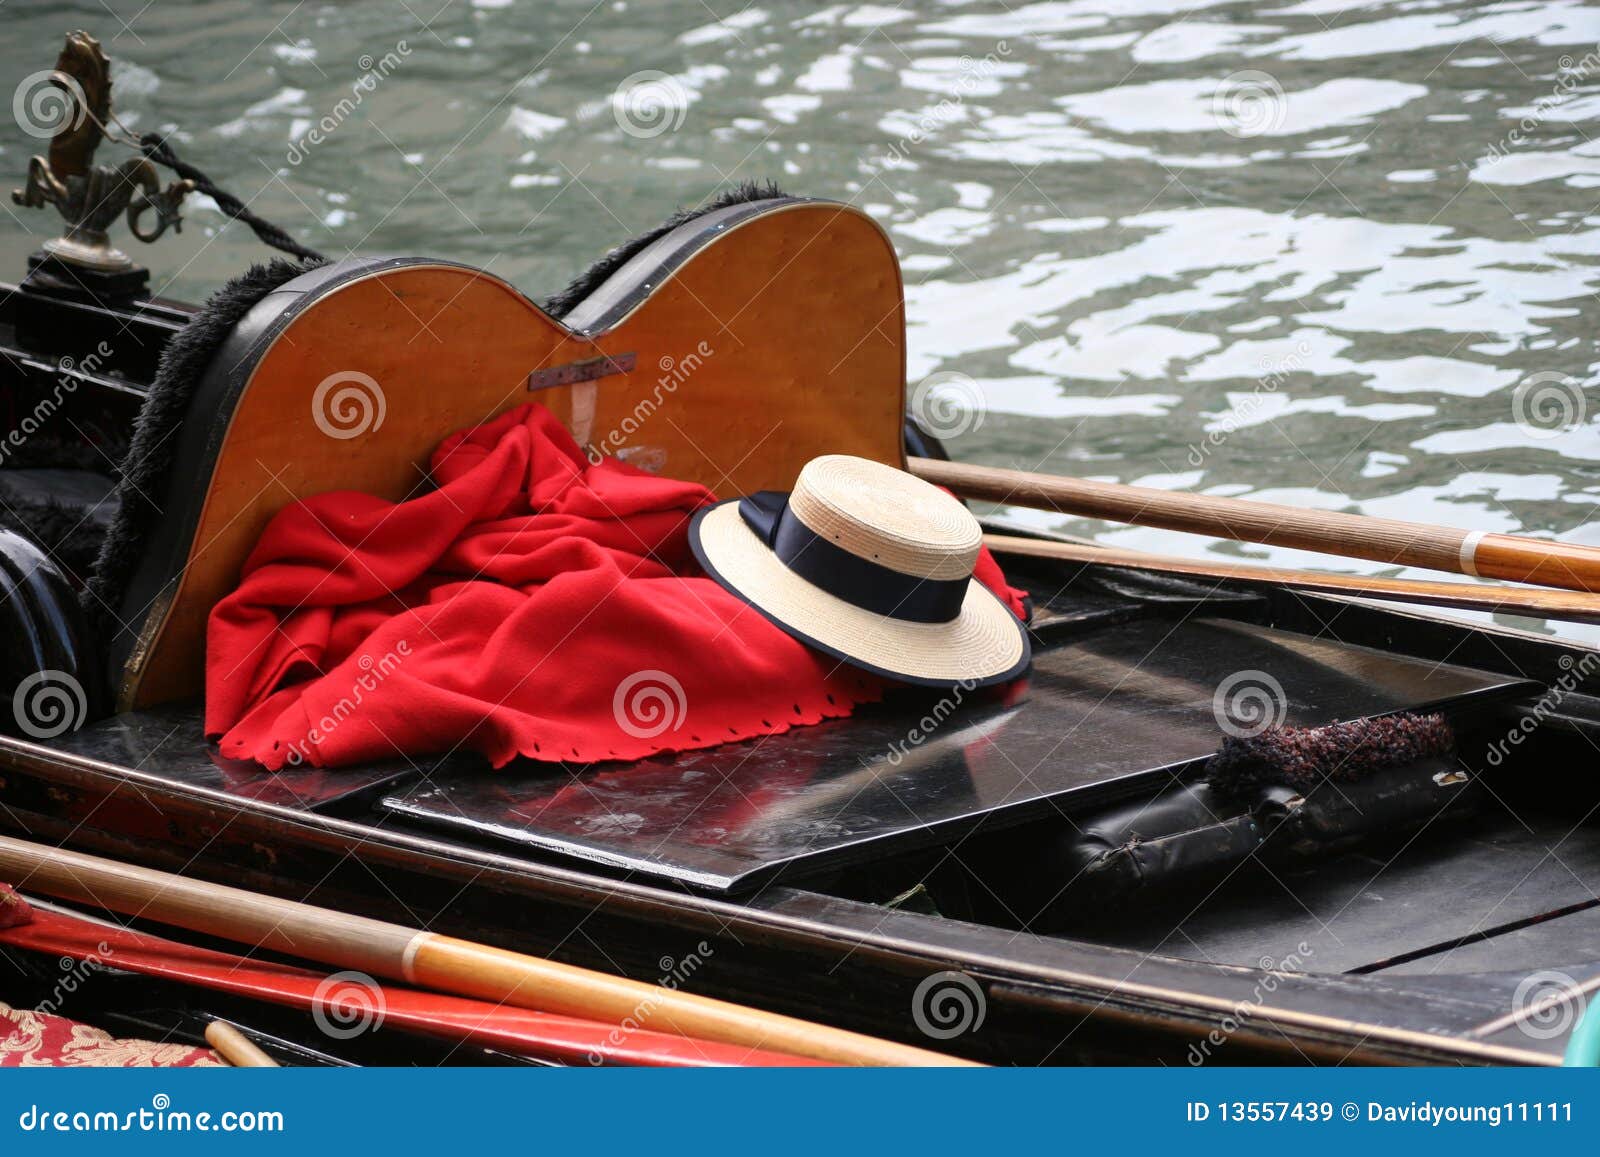 Le chapeau de paille du gondolier sur la gondole, Venise - il a laissé son chapeau sur le bateau noir lisse pendant qu'il pendille sur le canal, sur Rio solides solubles Apostoli